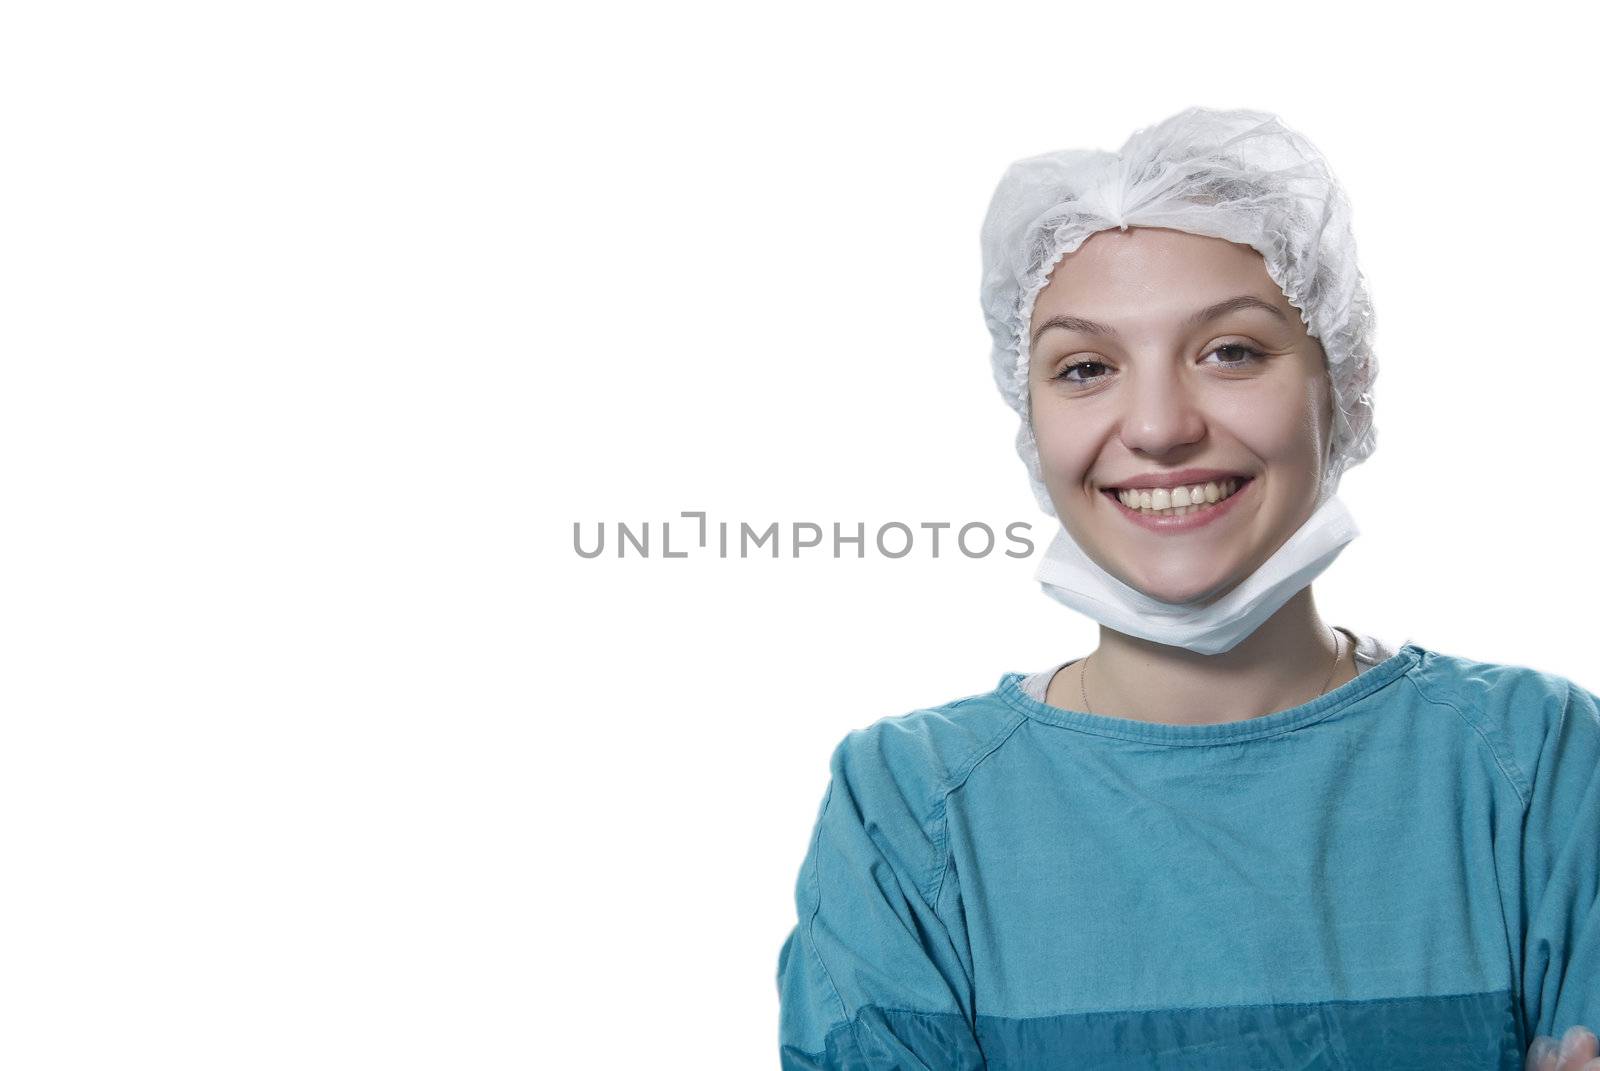 Female surgeon by pencap